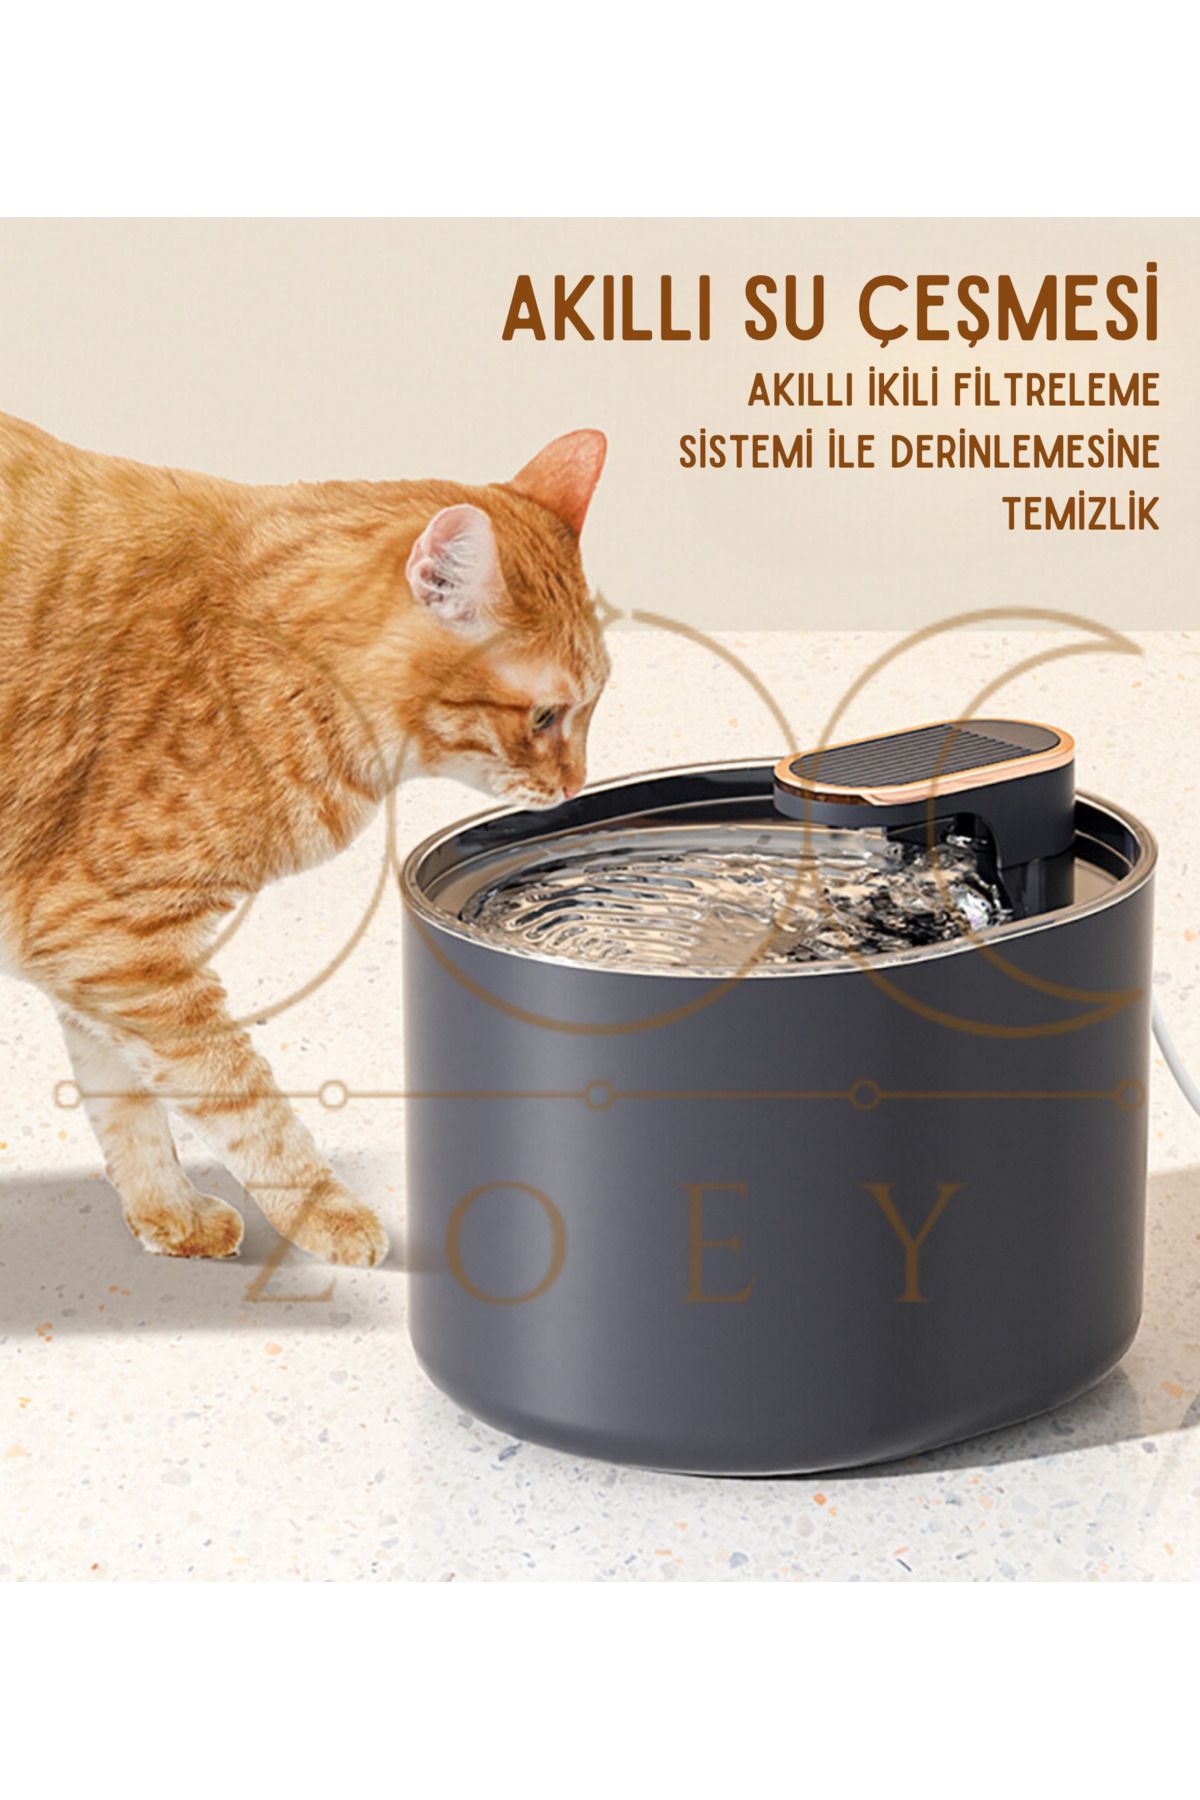 AYLA STAND Otomatik Evcil Hayvan Su Çeşmesi, Kedi Köpek Su Sebili Otomatik Su Pınarı Su Çeşmesi